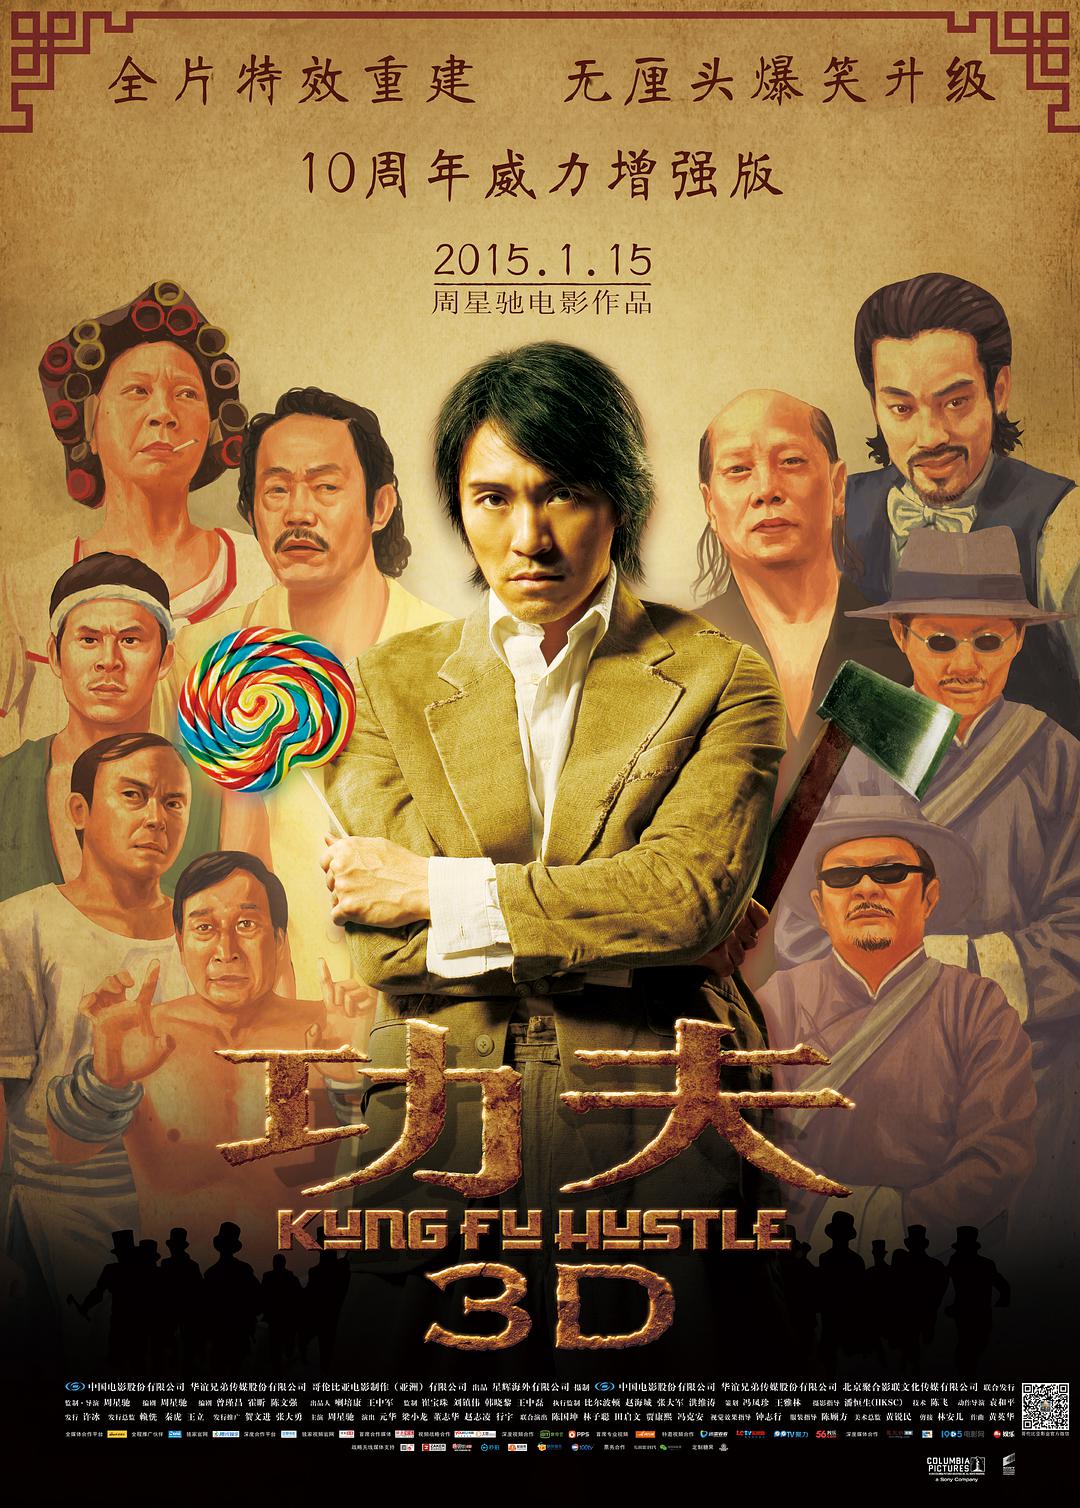 功夫/Kung Fu Hustle [ 国版新索原盘+花絮DVD 国配无损5.1音轨评论音轨 简繁字幕] Kung Fu Hustle 2004 CHN 1080p Blu-ray MPEG-2 LPCM 5.1-BHYS@CHDBits[28.41GB]-1.jpg